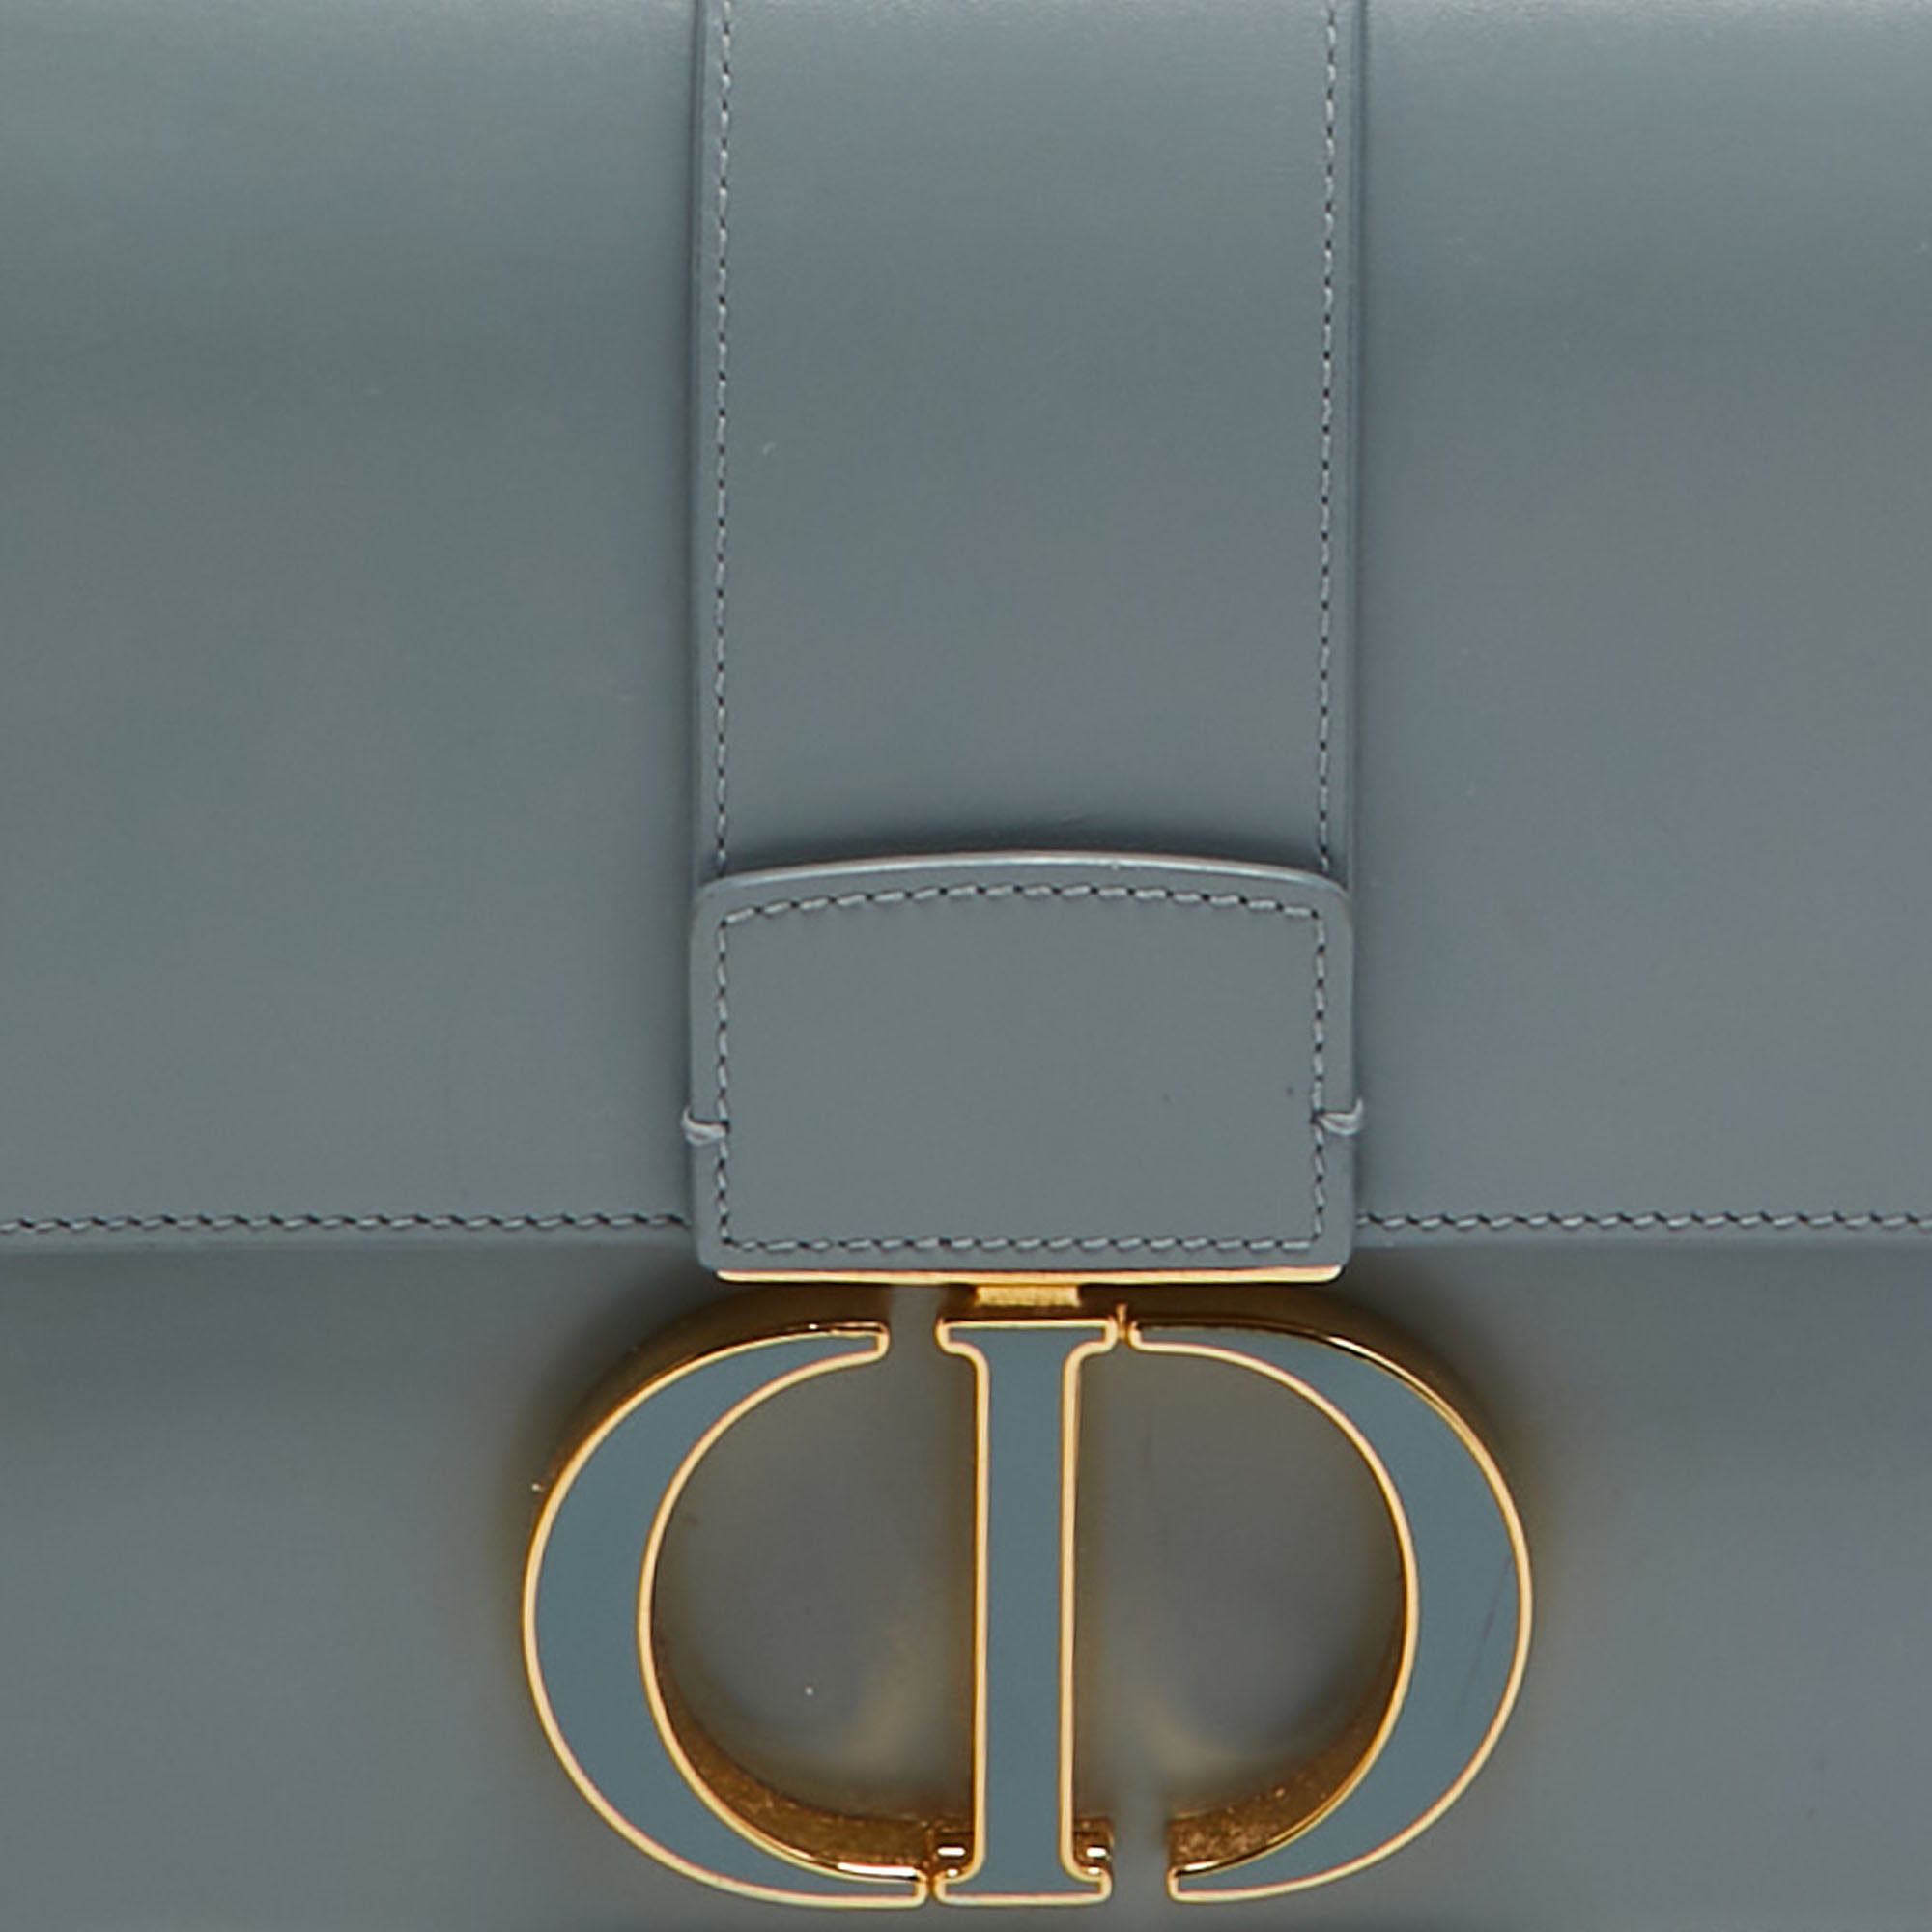 Dior Pale Blue Leather 30 Montaigne Shoulder Bag